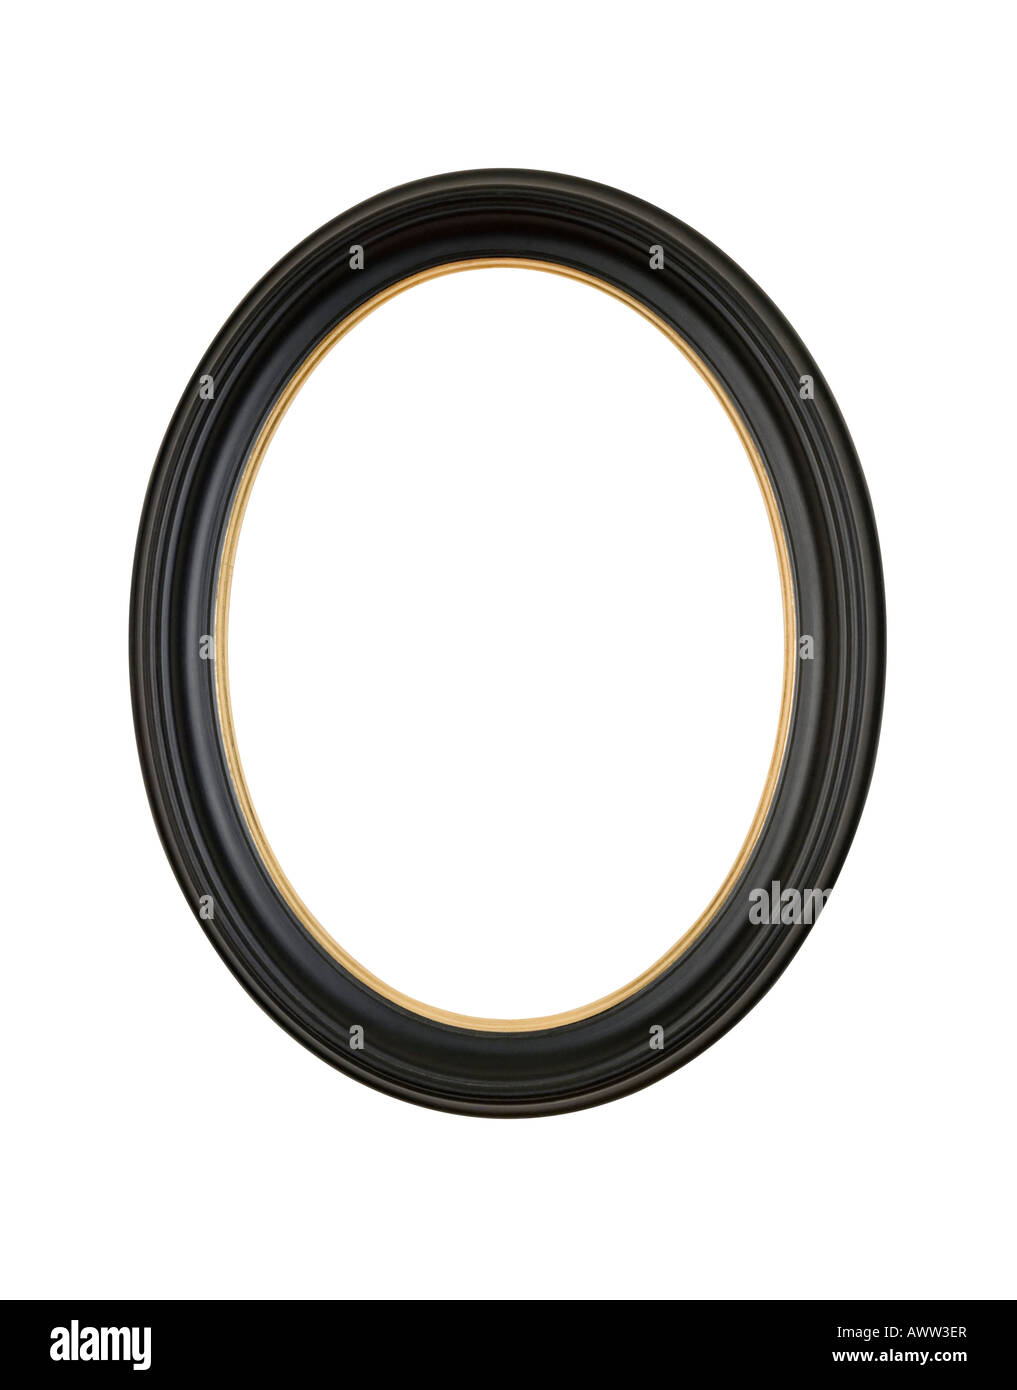 Bild Rahmen Oval Runde in schwarzem satin finish, gold Faltmarkierungen, isoliert auf weißem Hintergrund Stockfoto